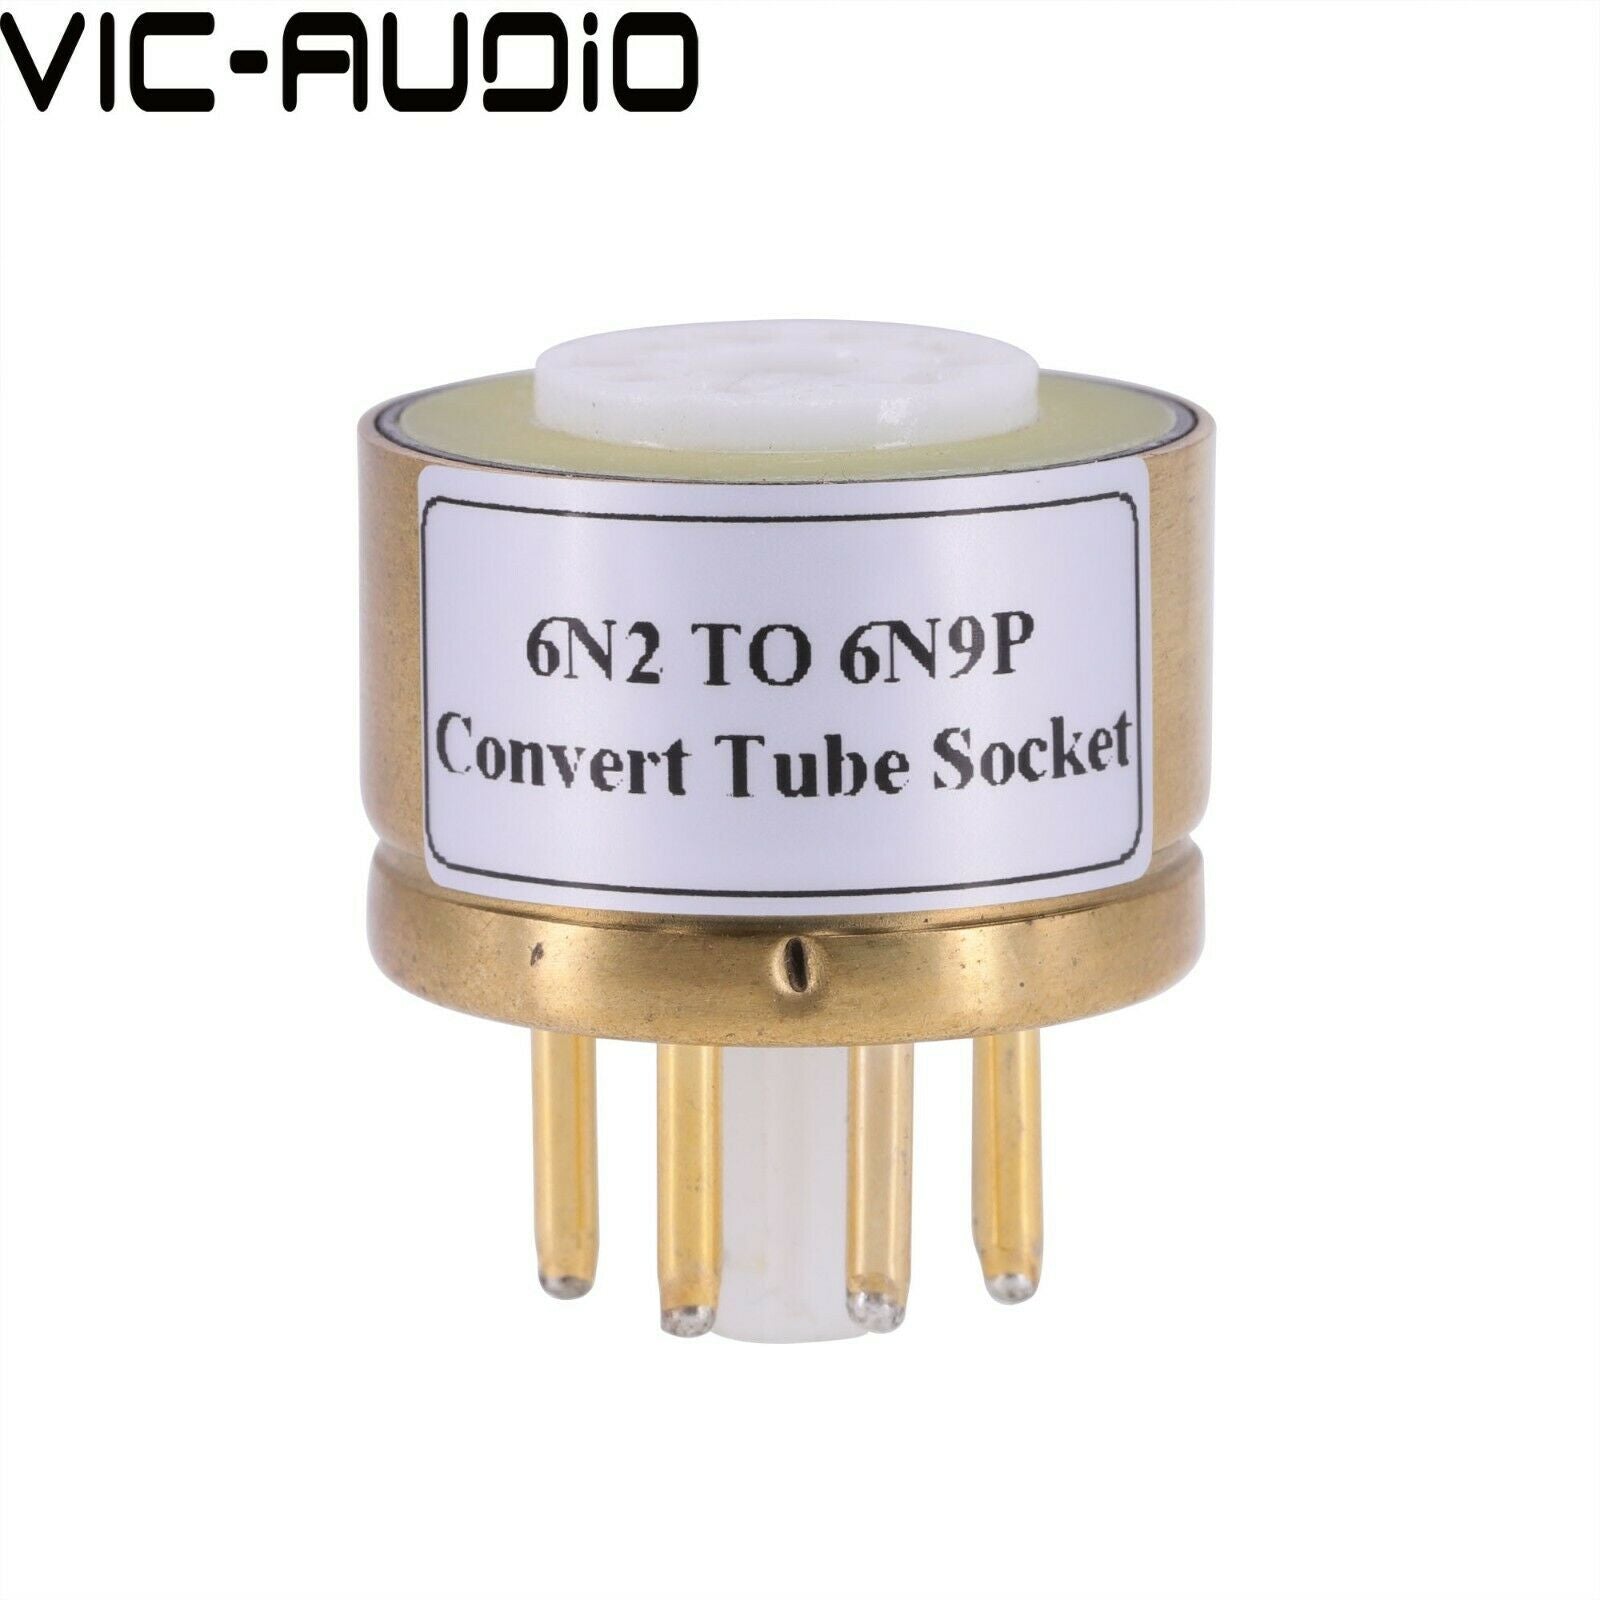 1PC E88CC 6922 6N2 TO 6N9P 6SN7 6N8P CV181 Vacuum Tube Adapter Socket Amplifier